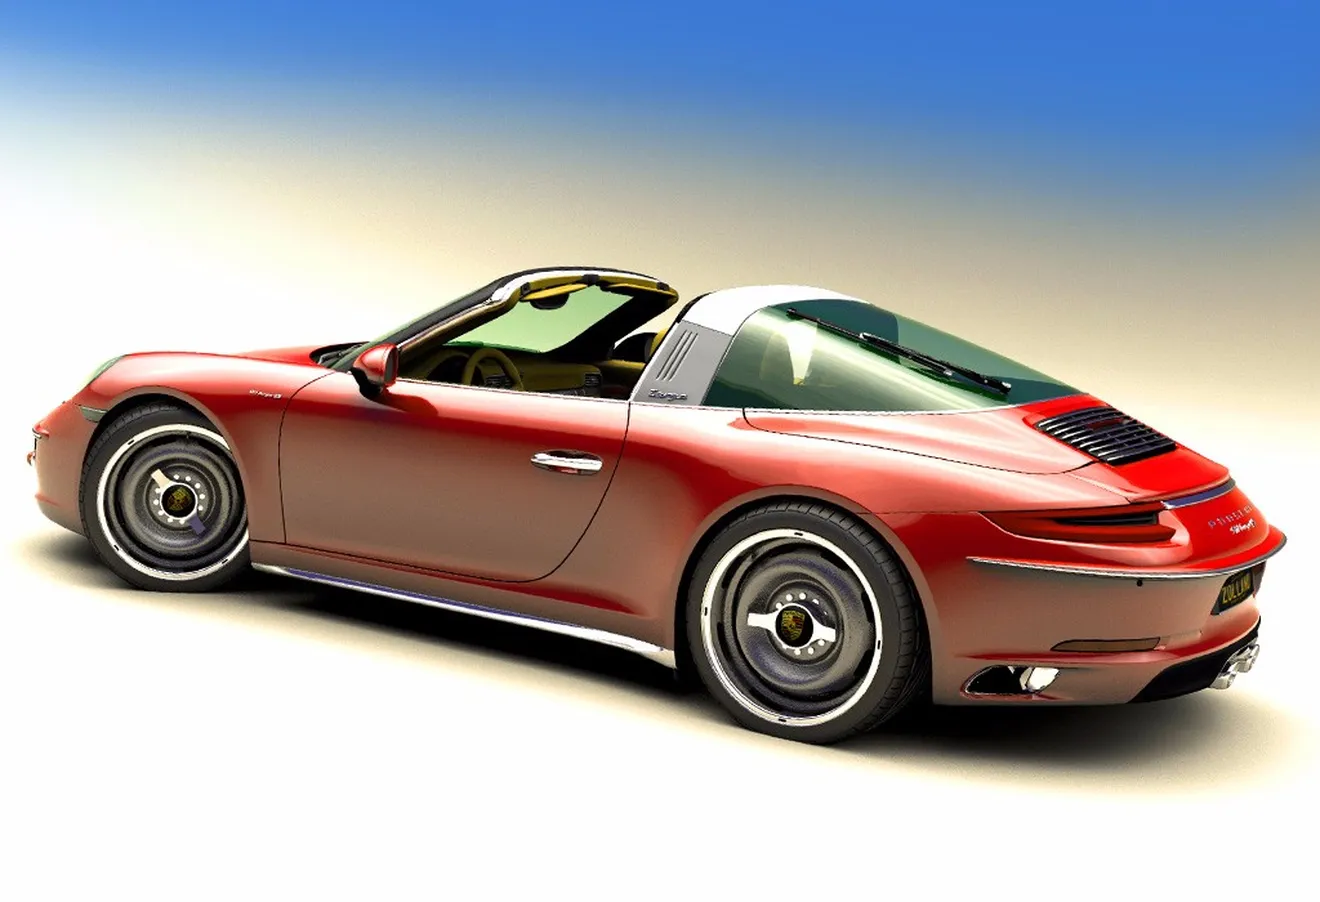 Zolland Design y su “brochazo” retro para el Porsche 911